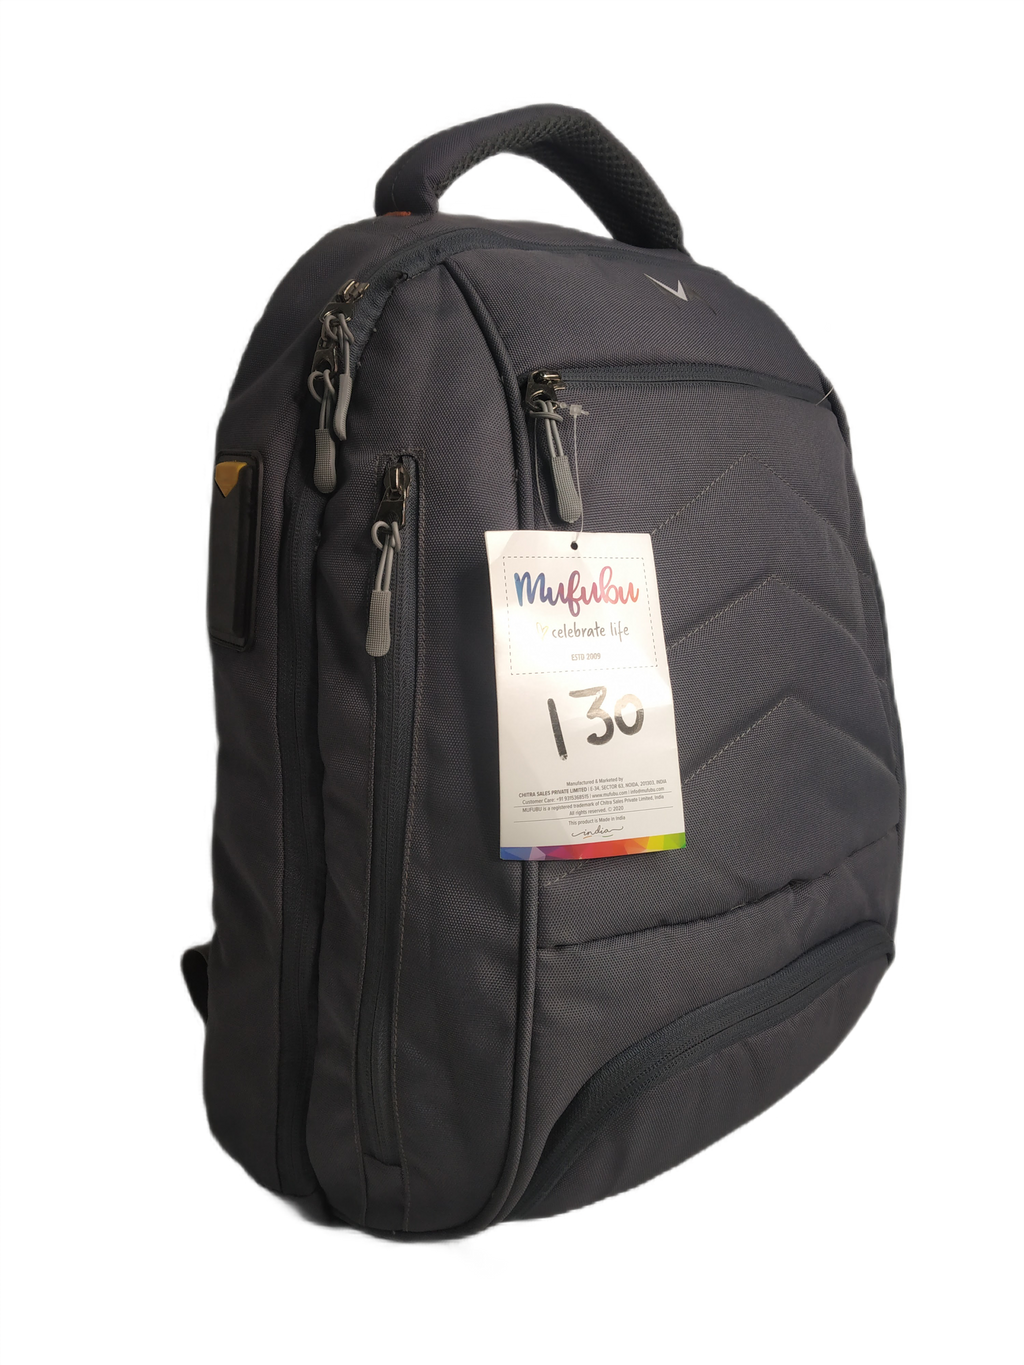 Backpack (MOQ 100)